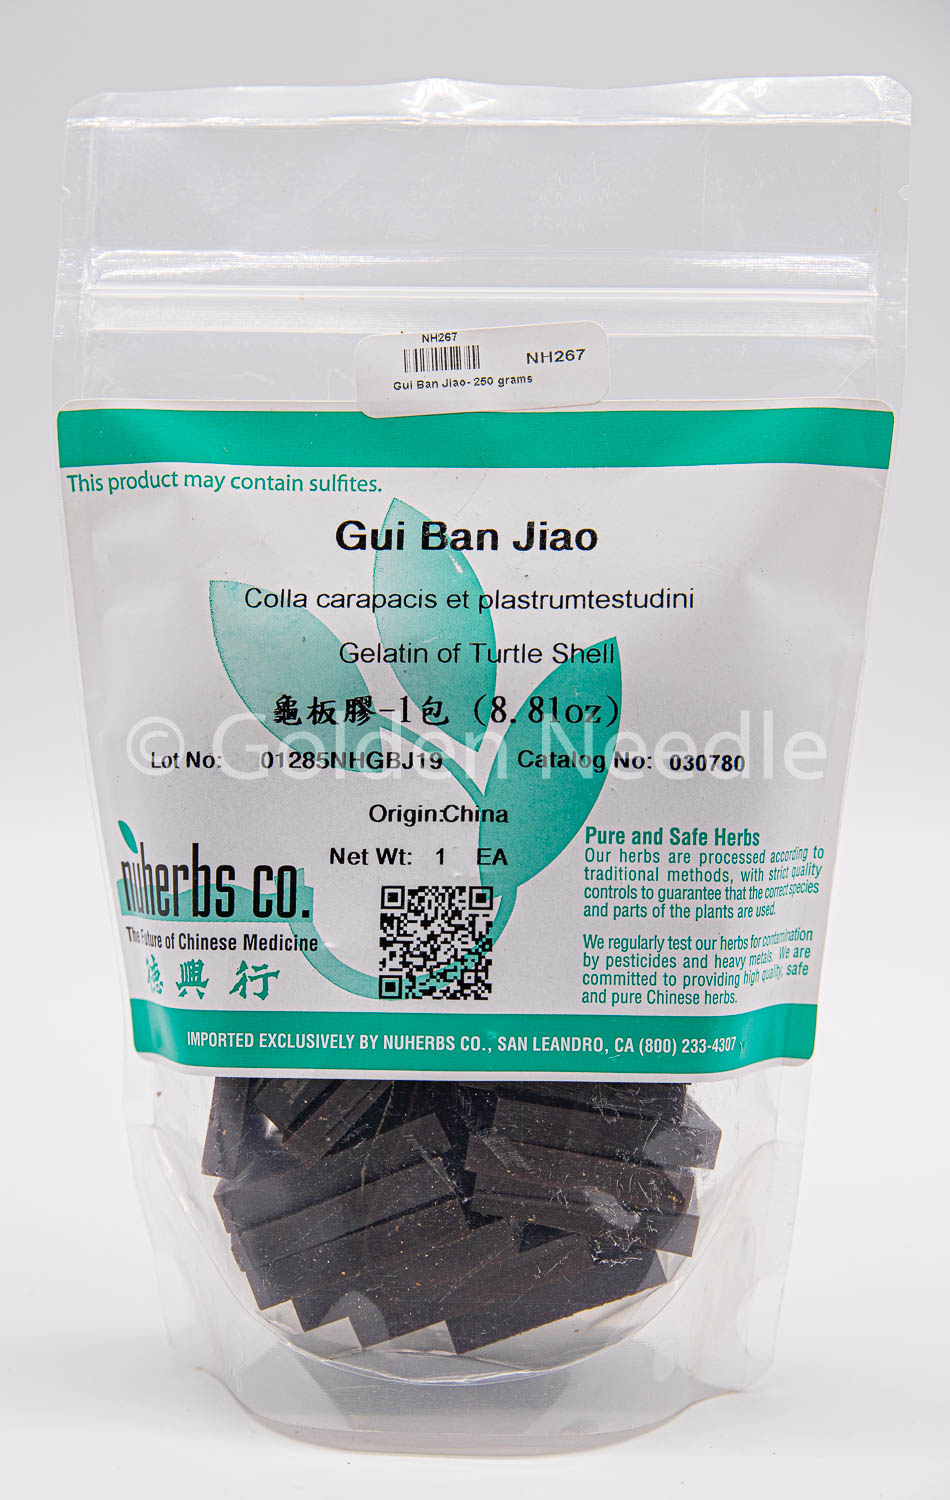 Gui Ban Jiao 250 gram